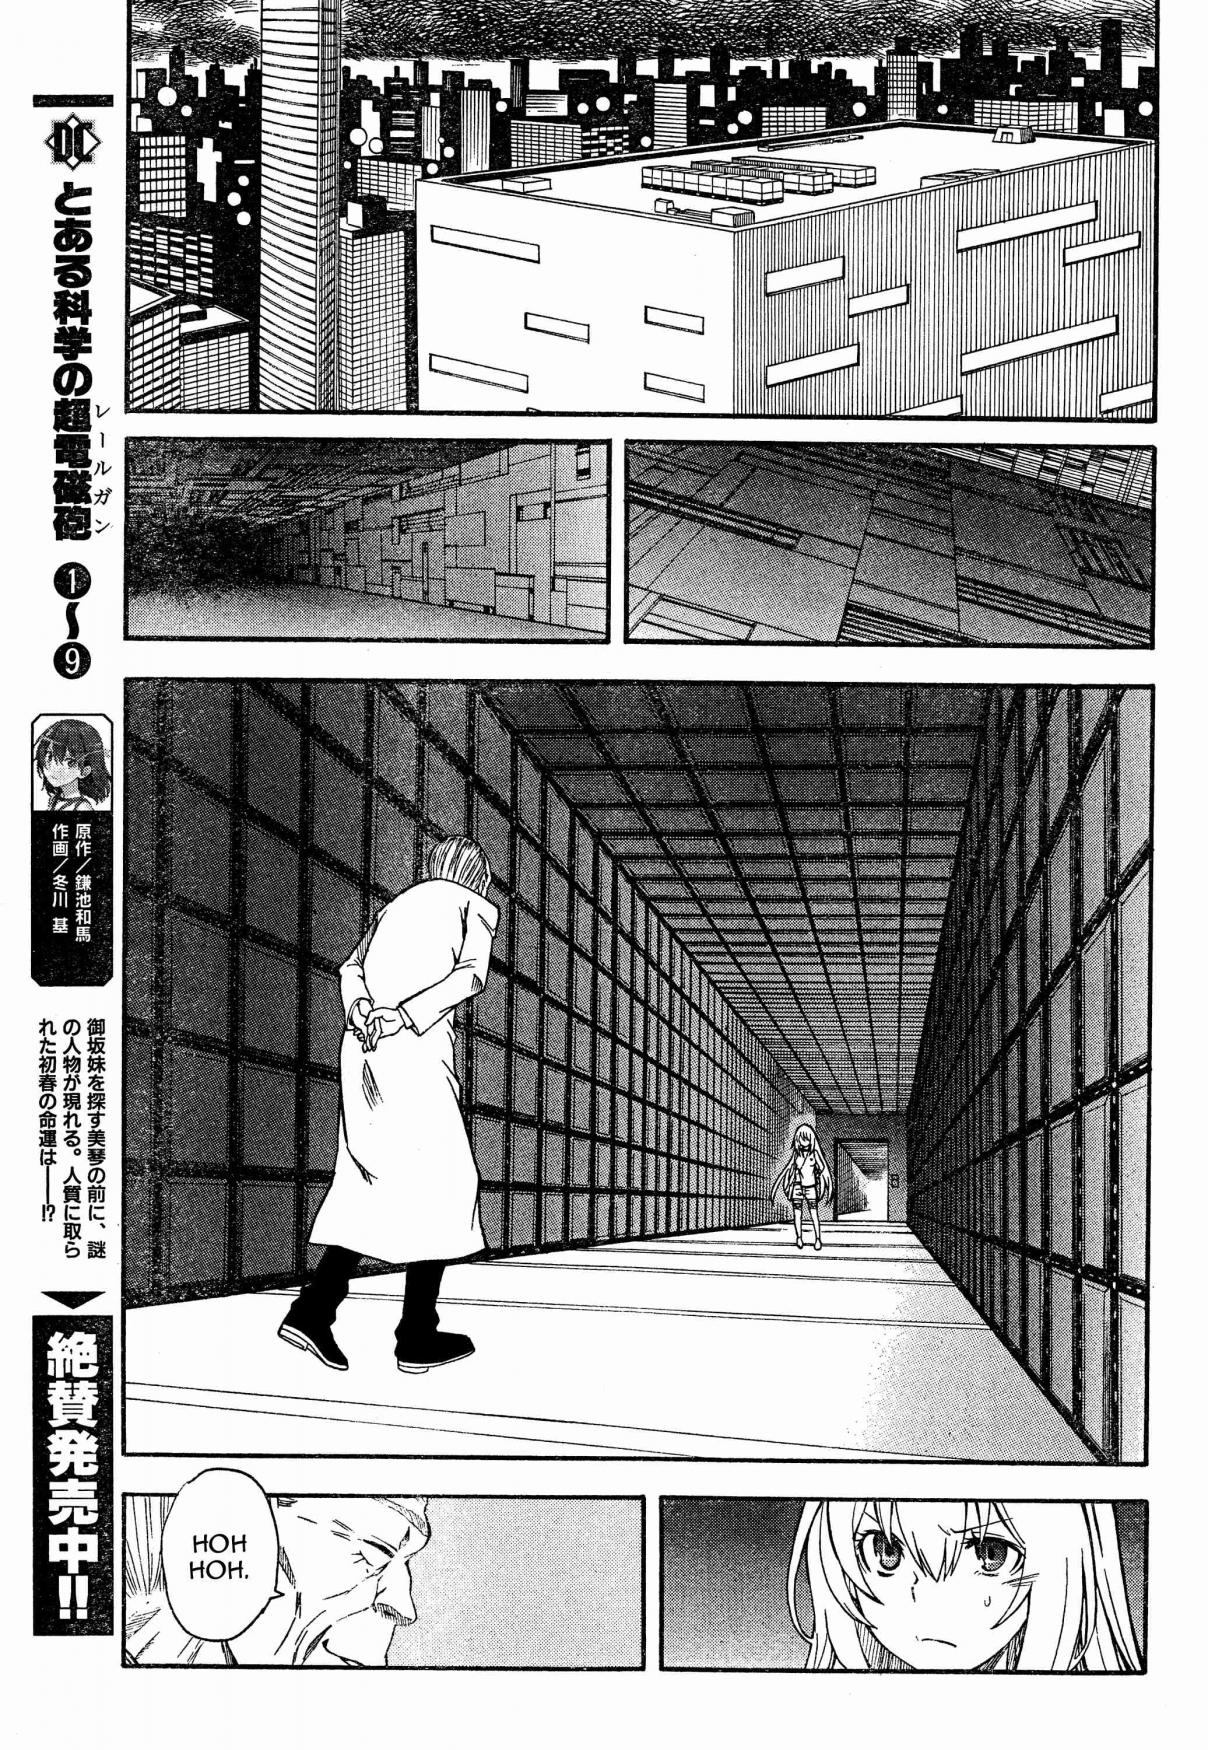 Toaru Kagaku no Choudenjihou Vol. 10 Ch. 66 Preparations